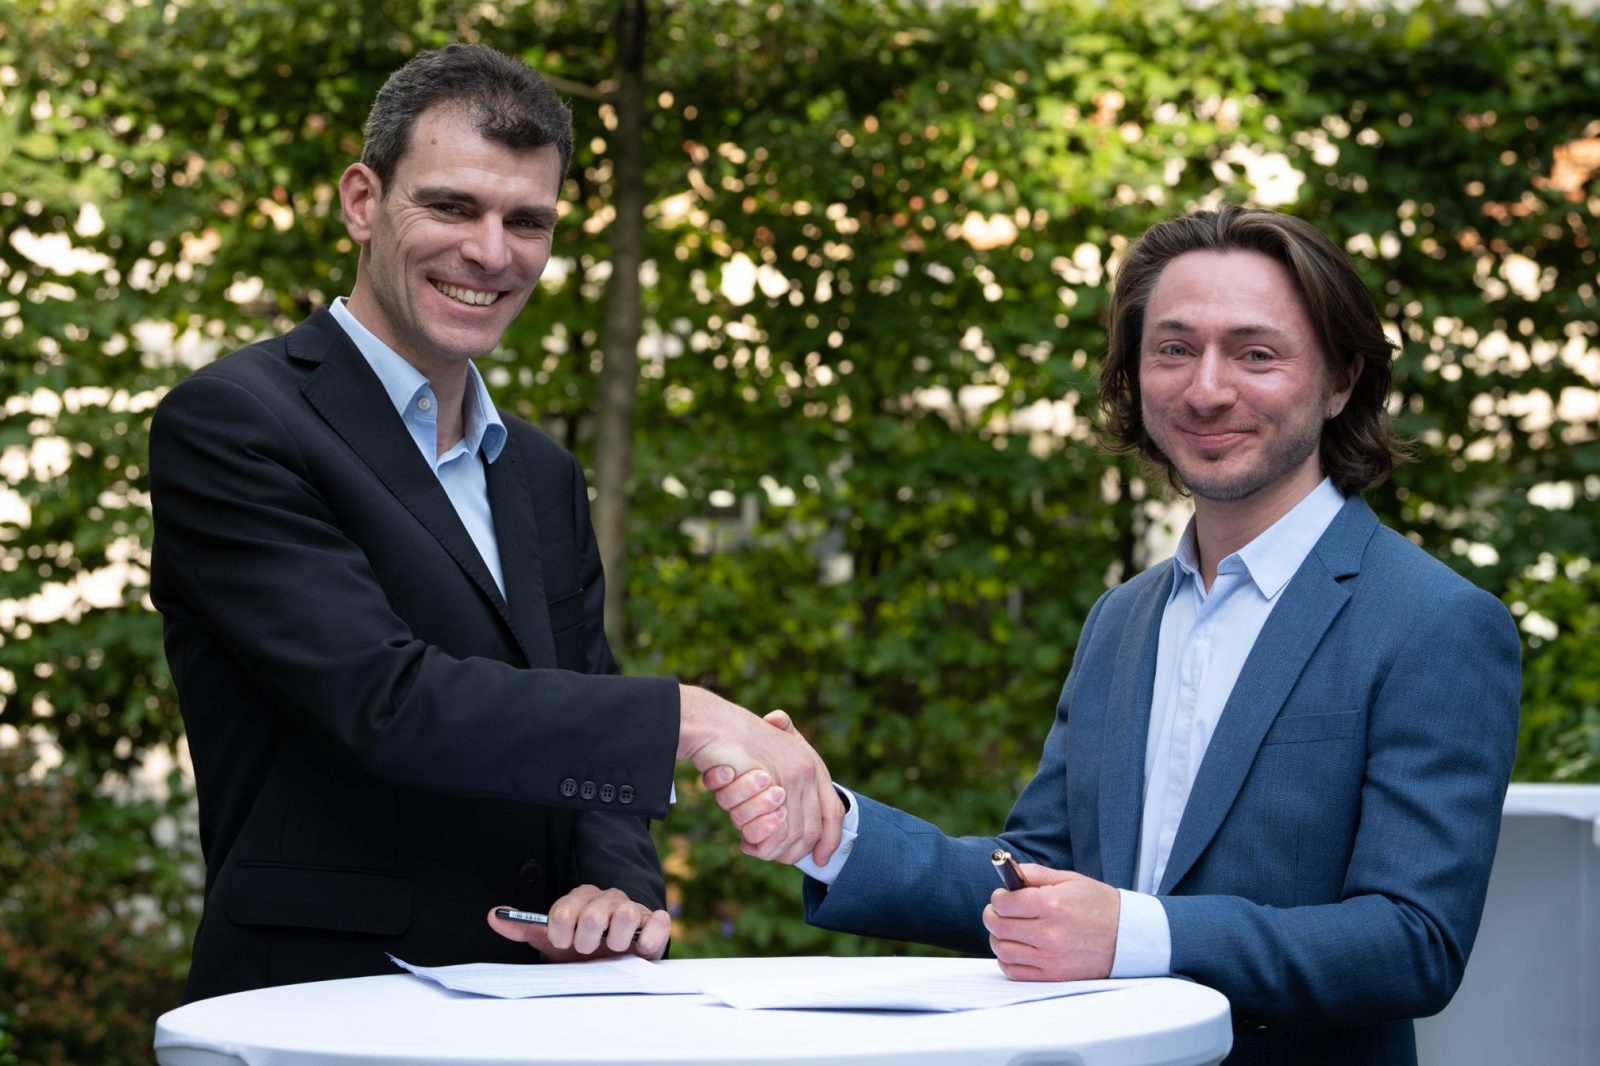 Pasqal CEO 兼共同創設者 Georges-Olivier Reymond (左) と Welinq CEO 兼共同創設者 Tom Darras (右) は、相互接続されたマルチ QPU システムという共通の目標に向けて両社の連携を図りました。 (出典: パスカル)